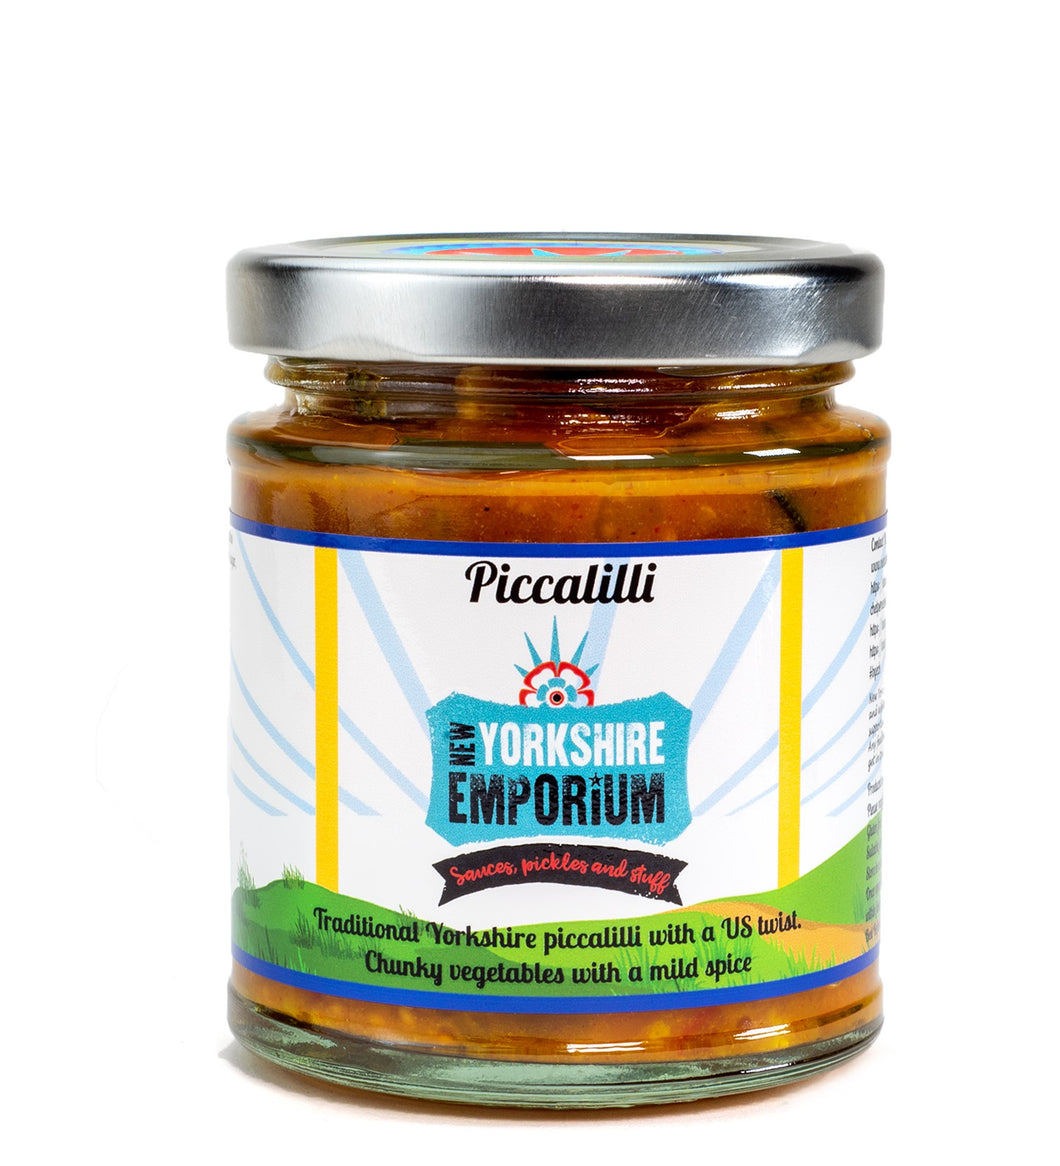 Piccalilli - New Yorkshire Emporium